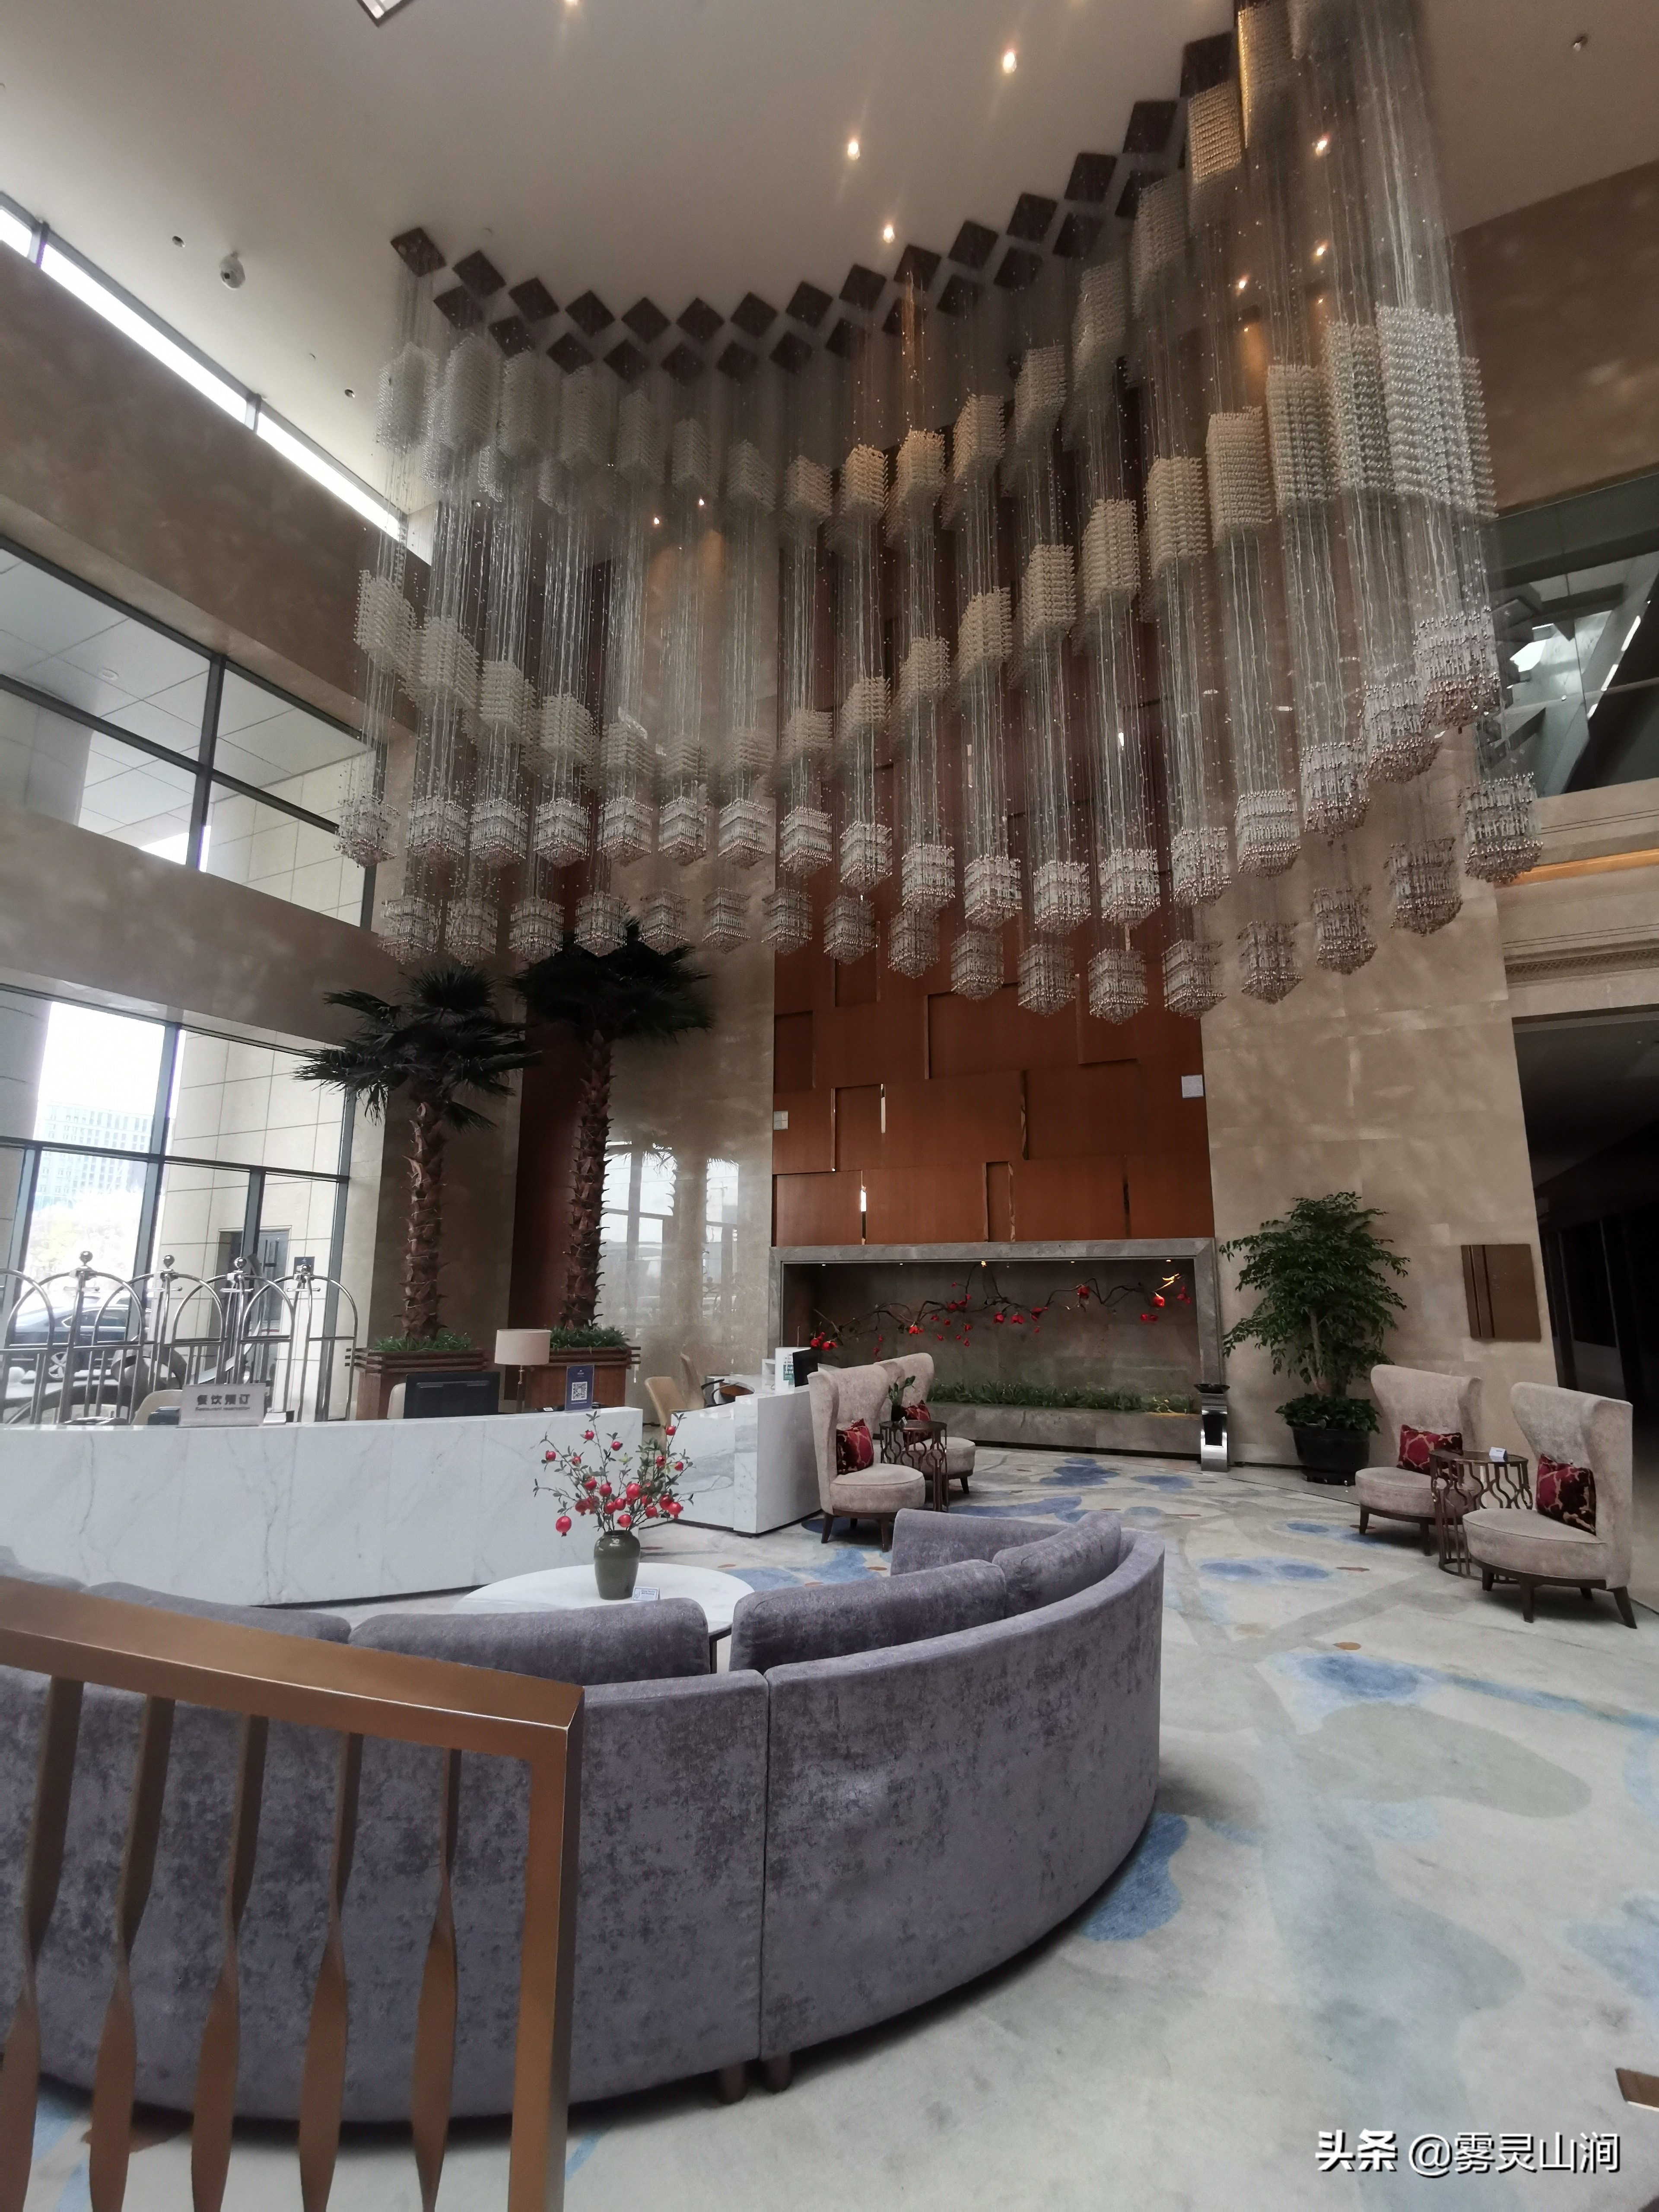 新疆乌鲁木齐市体验最好的五星级酒店—乌鲁木齐希尔顿酒店